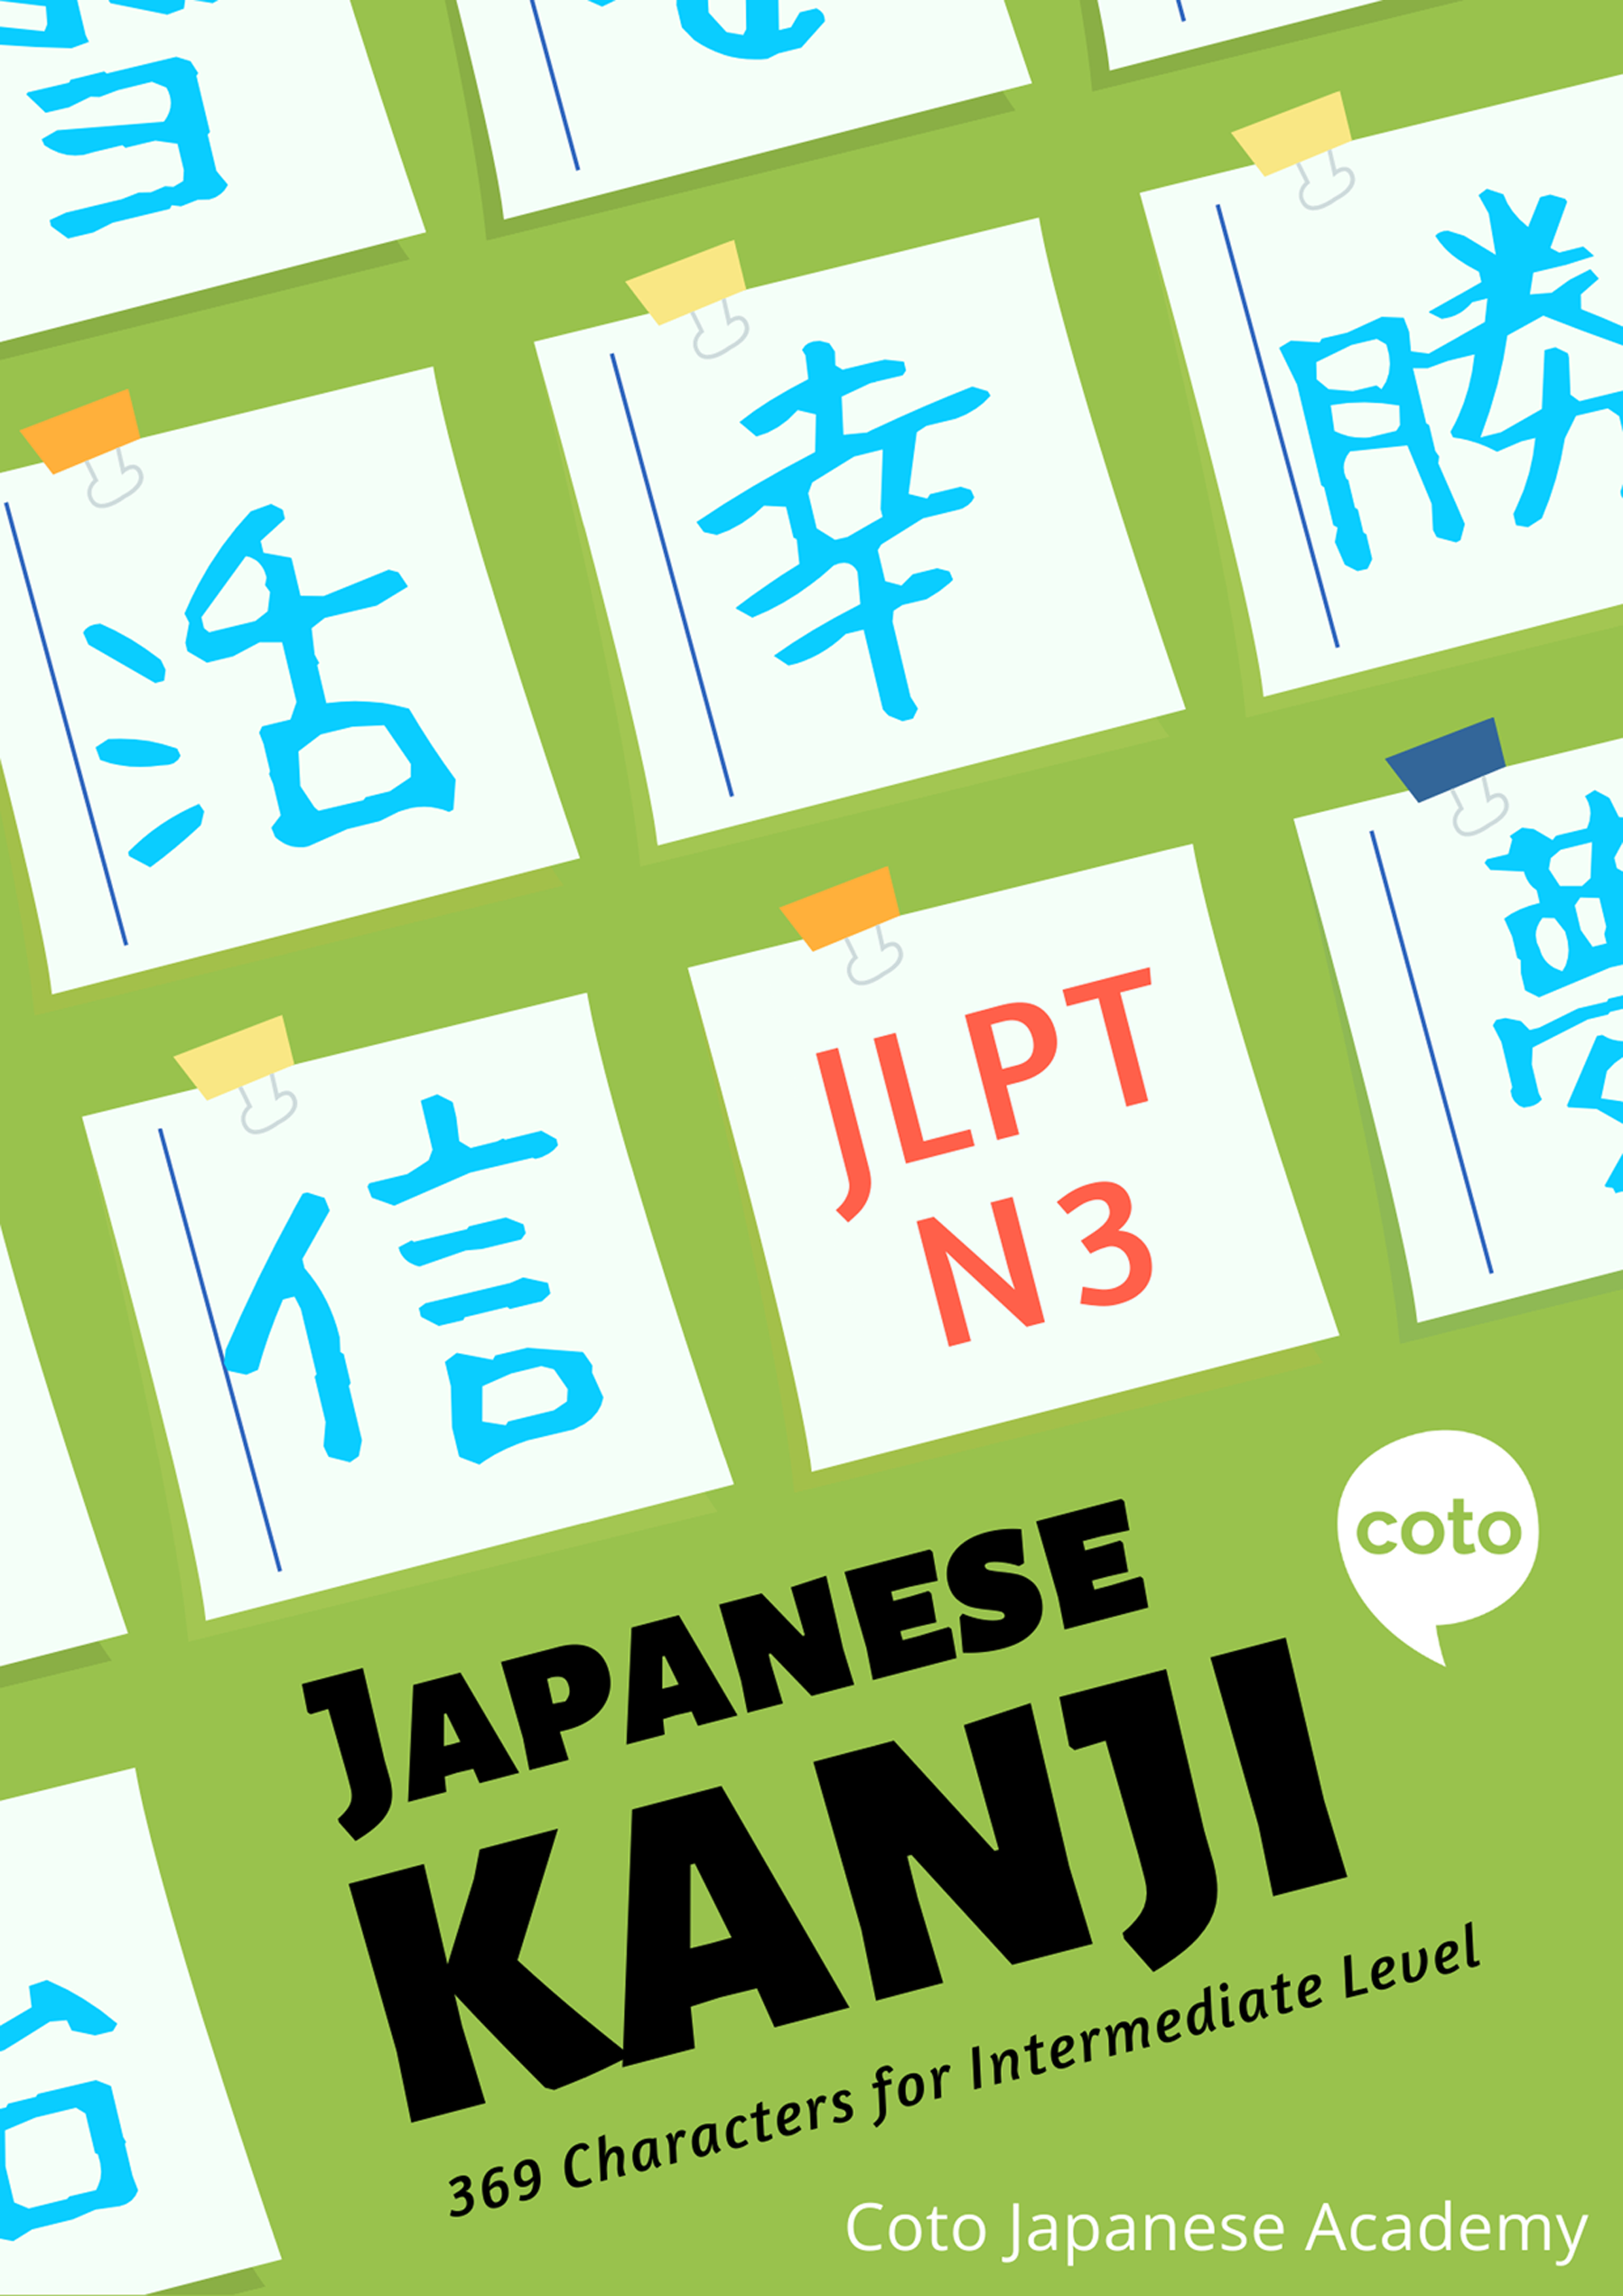 JLPT N3 Kanji Course (Quizzes, Workbook, Cheat sheet)